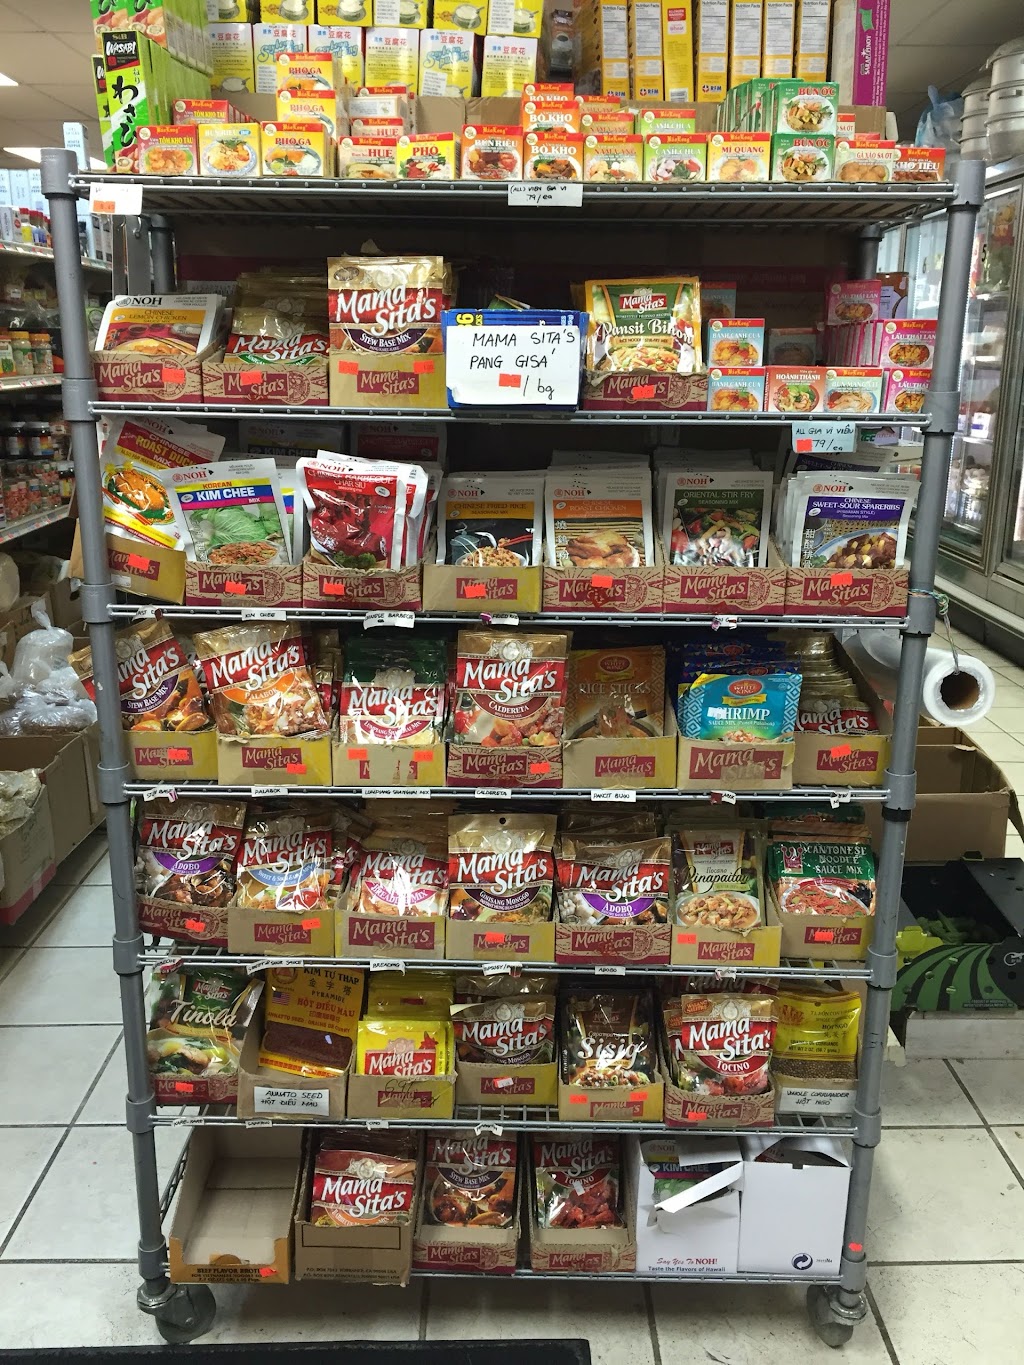 An Chau Asian Market | 3306 Bailey Ave, Buffalo, NY 14215 | Phone: (716) 833-5152